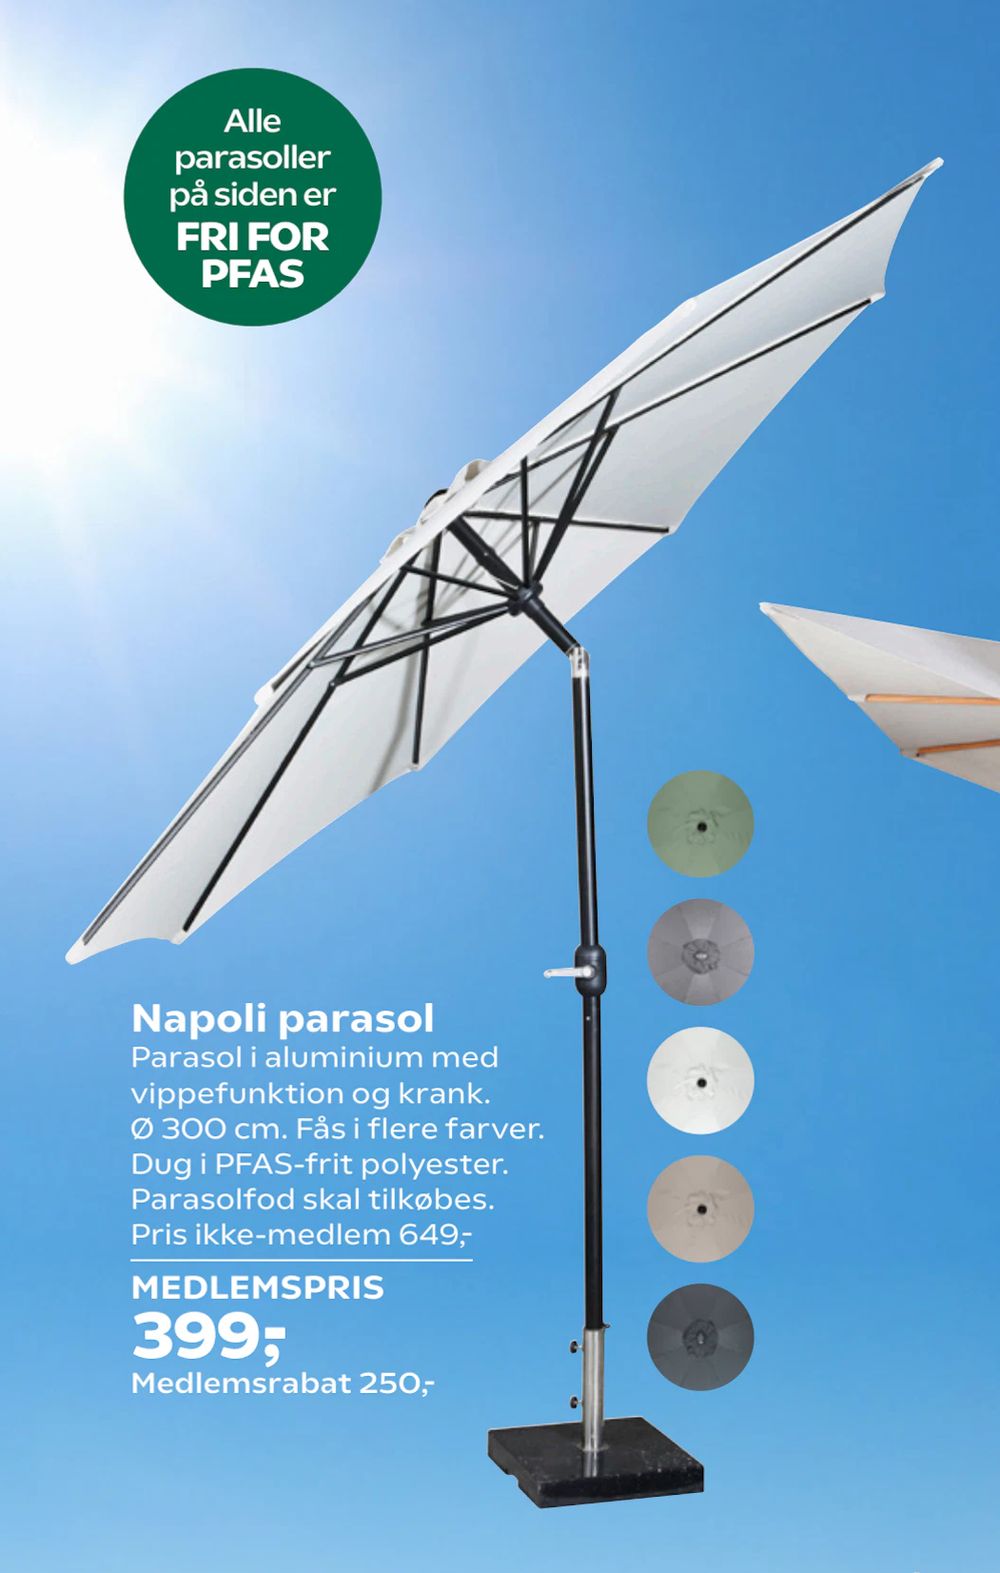 Tilbud på Napoli parasol fra Coop.dk til 649 kr.